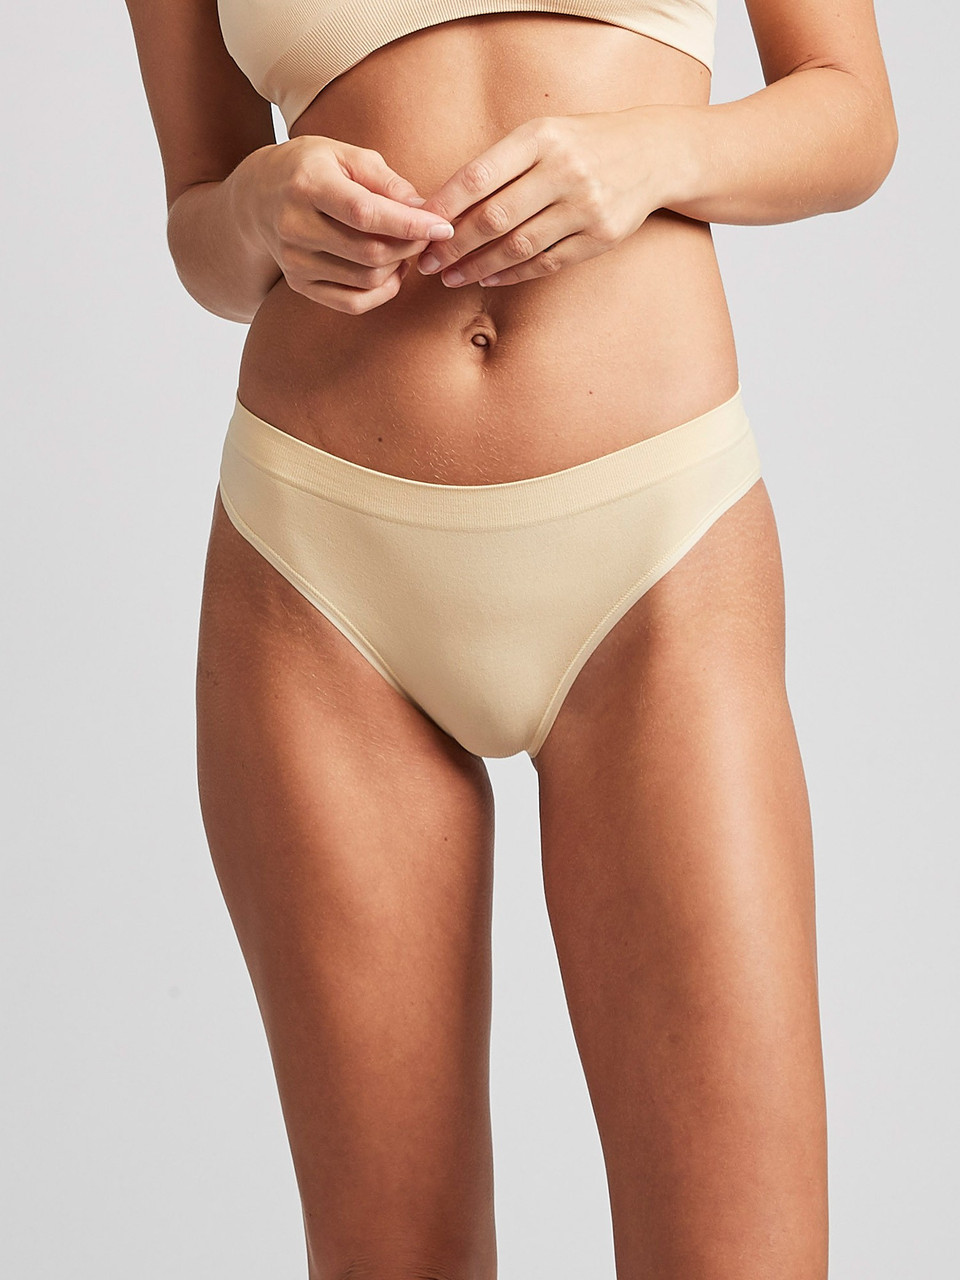 RUNCHENG 4 Pack Seamless Underwear for Women Cotton Cheeky Panties Soft  Stretch Bikini Briefs